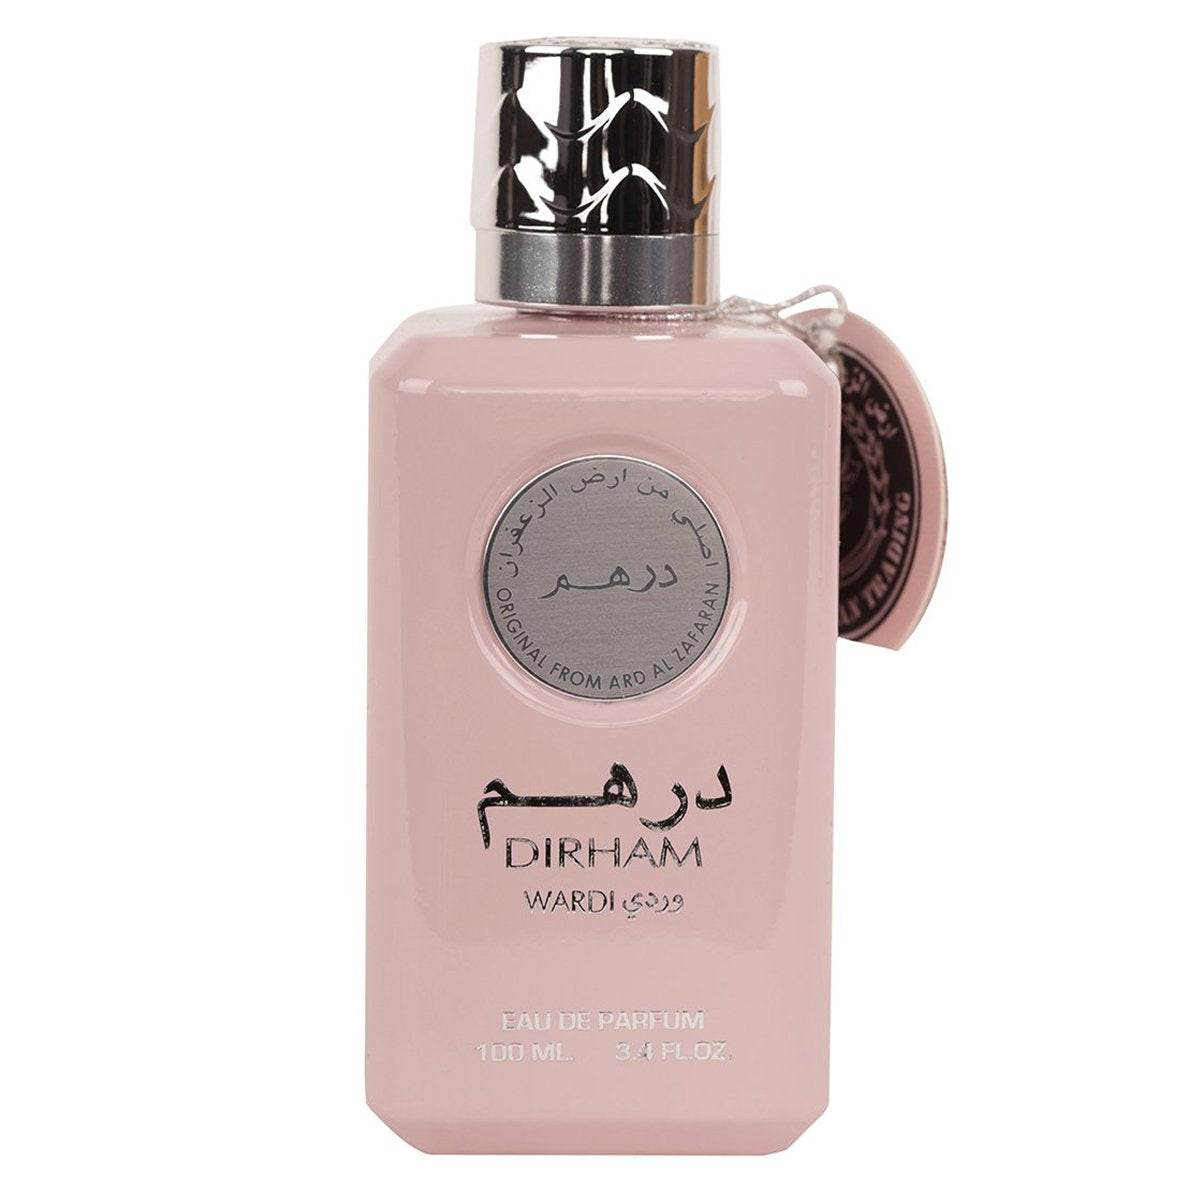 Dirham Wardi Eau de Parfum 100ml Ard Al Zaafaran - Smile Europe Wholesale 